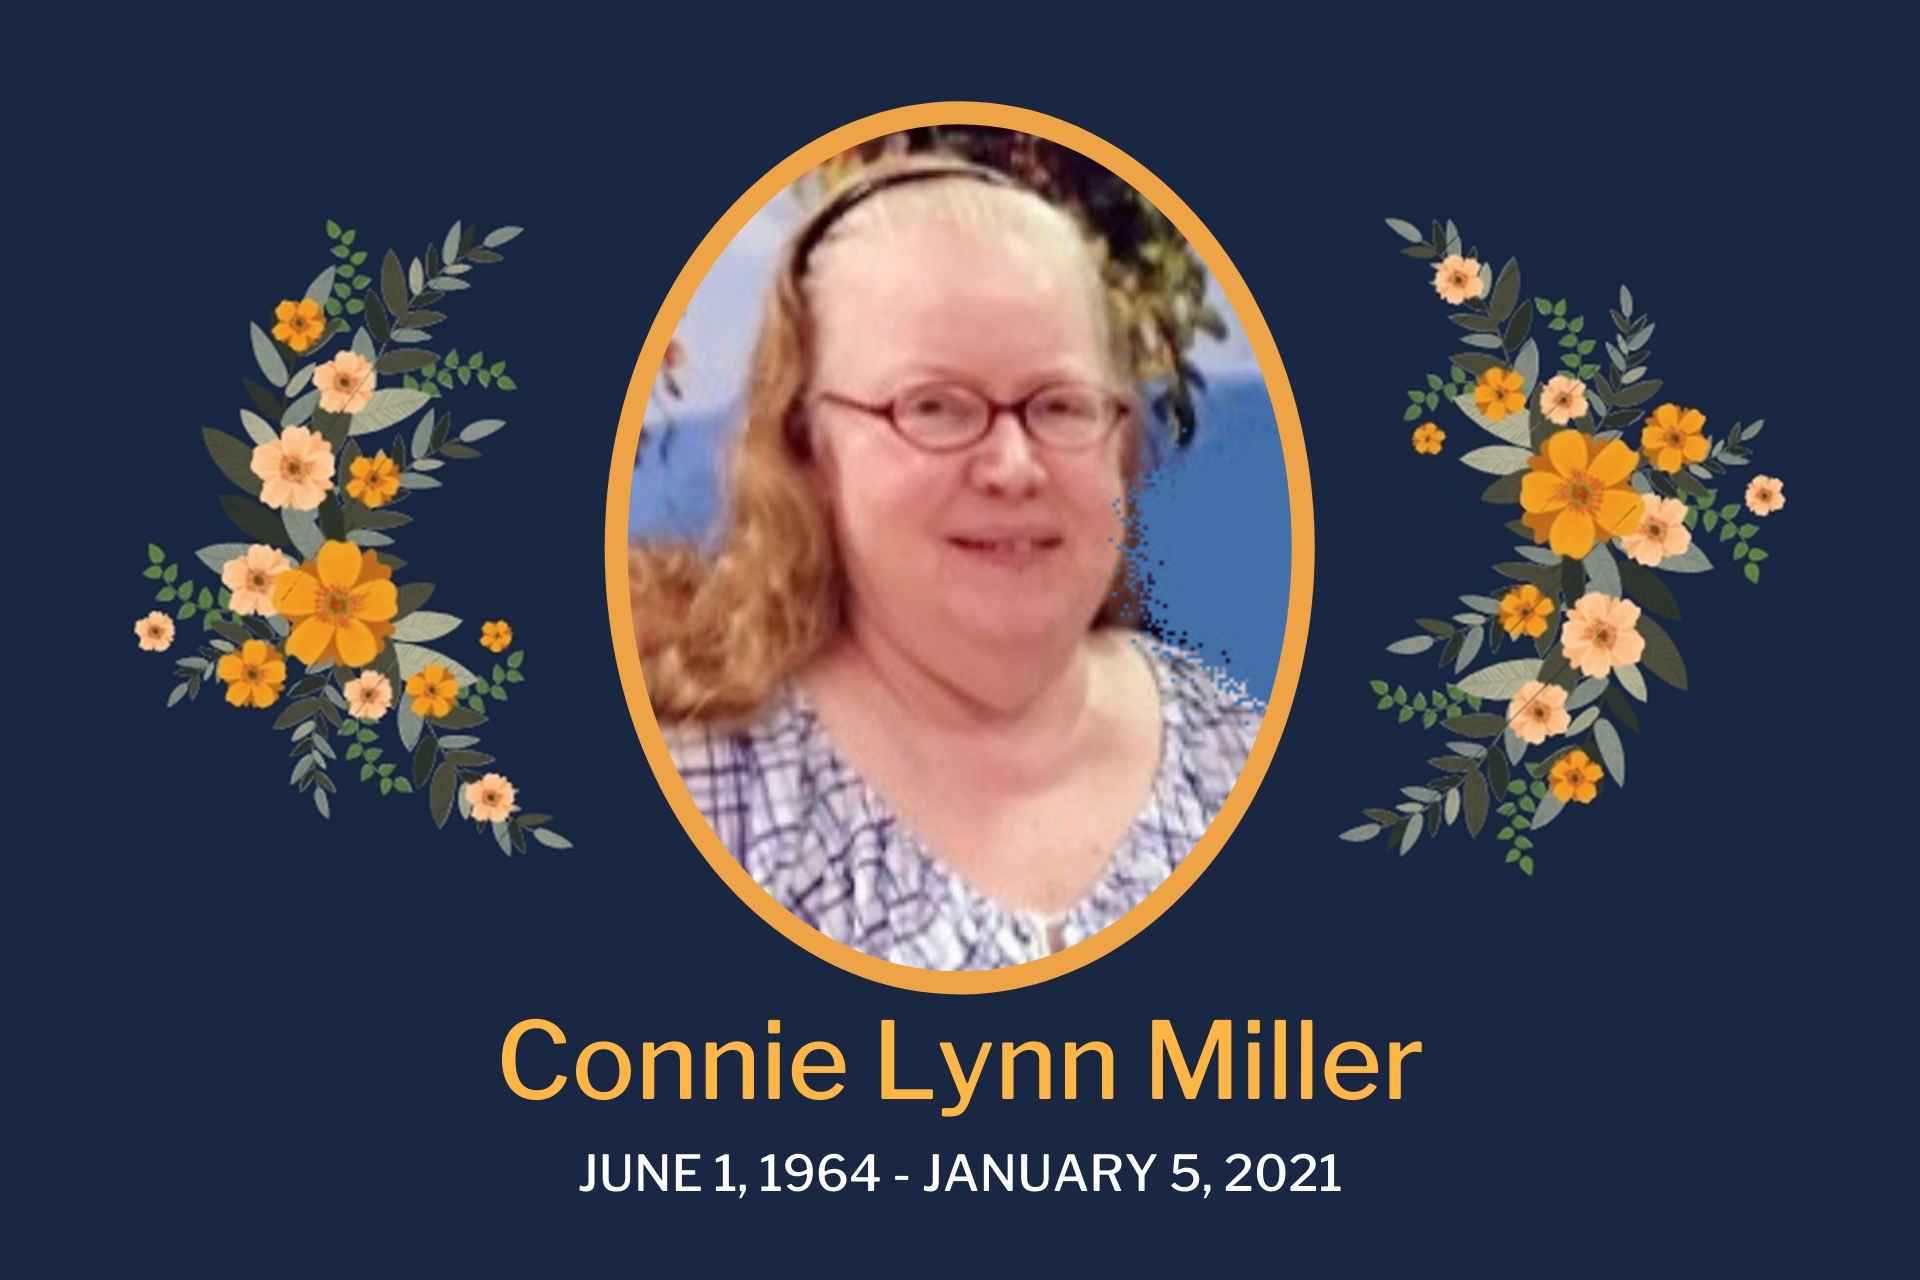 Connie Lynn Miller